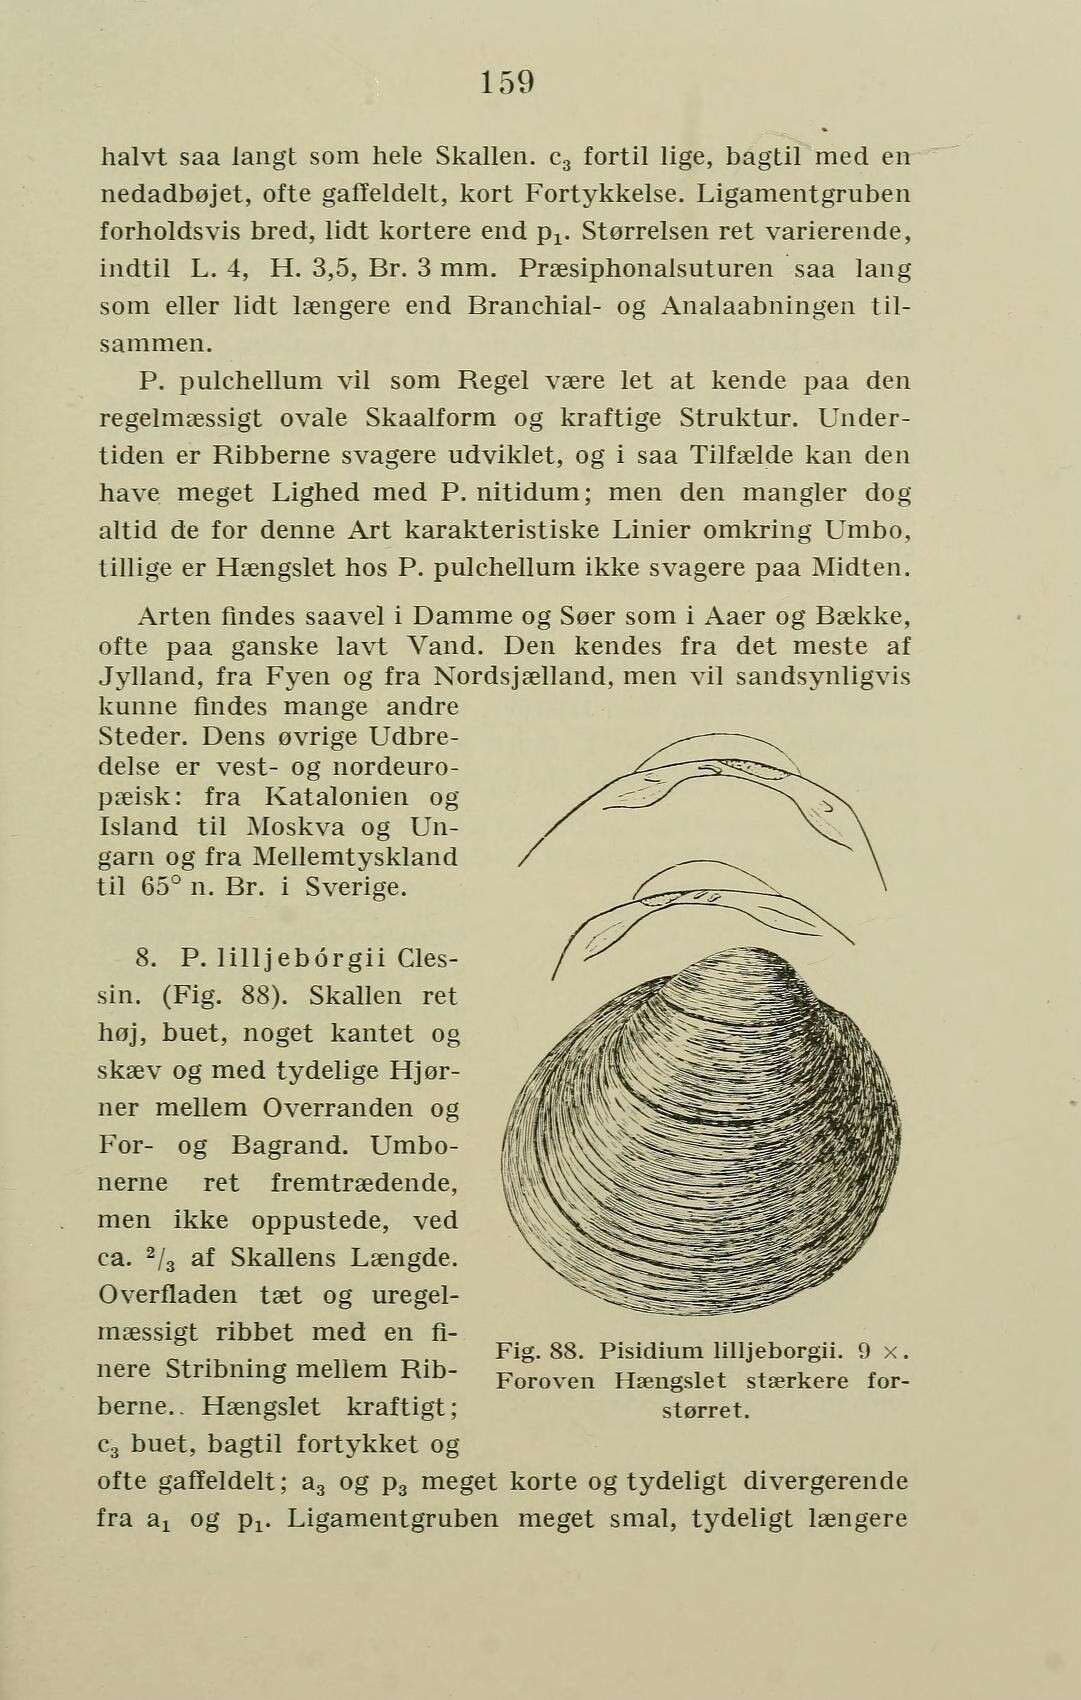 Image of Pisidium C. Pfeiffer 1821